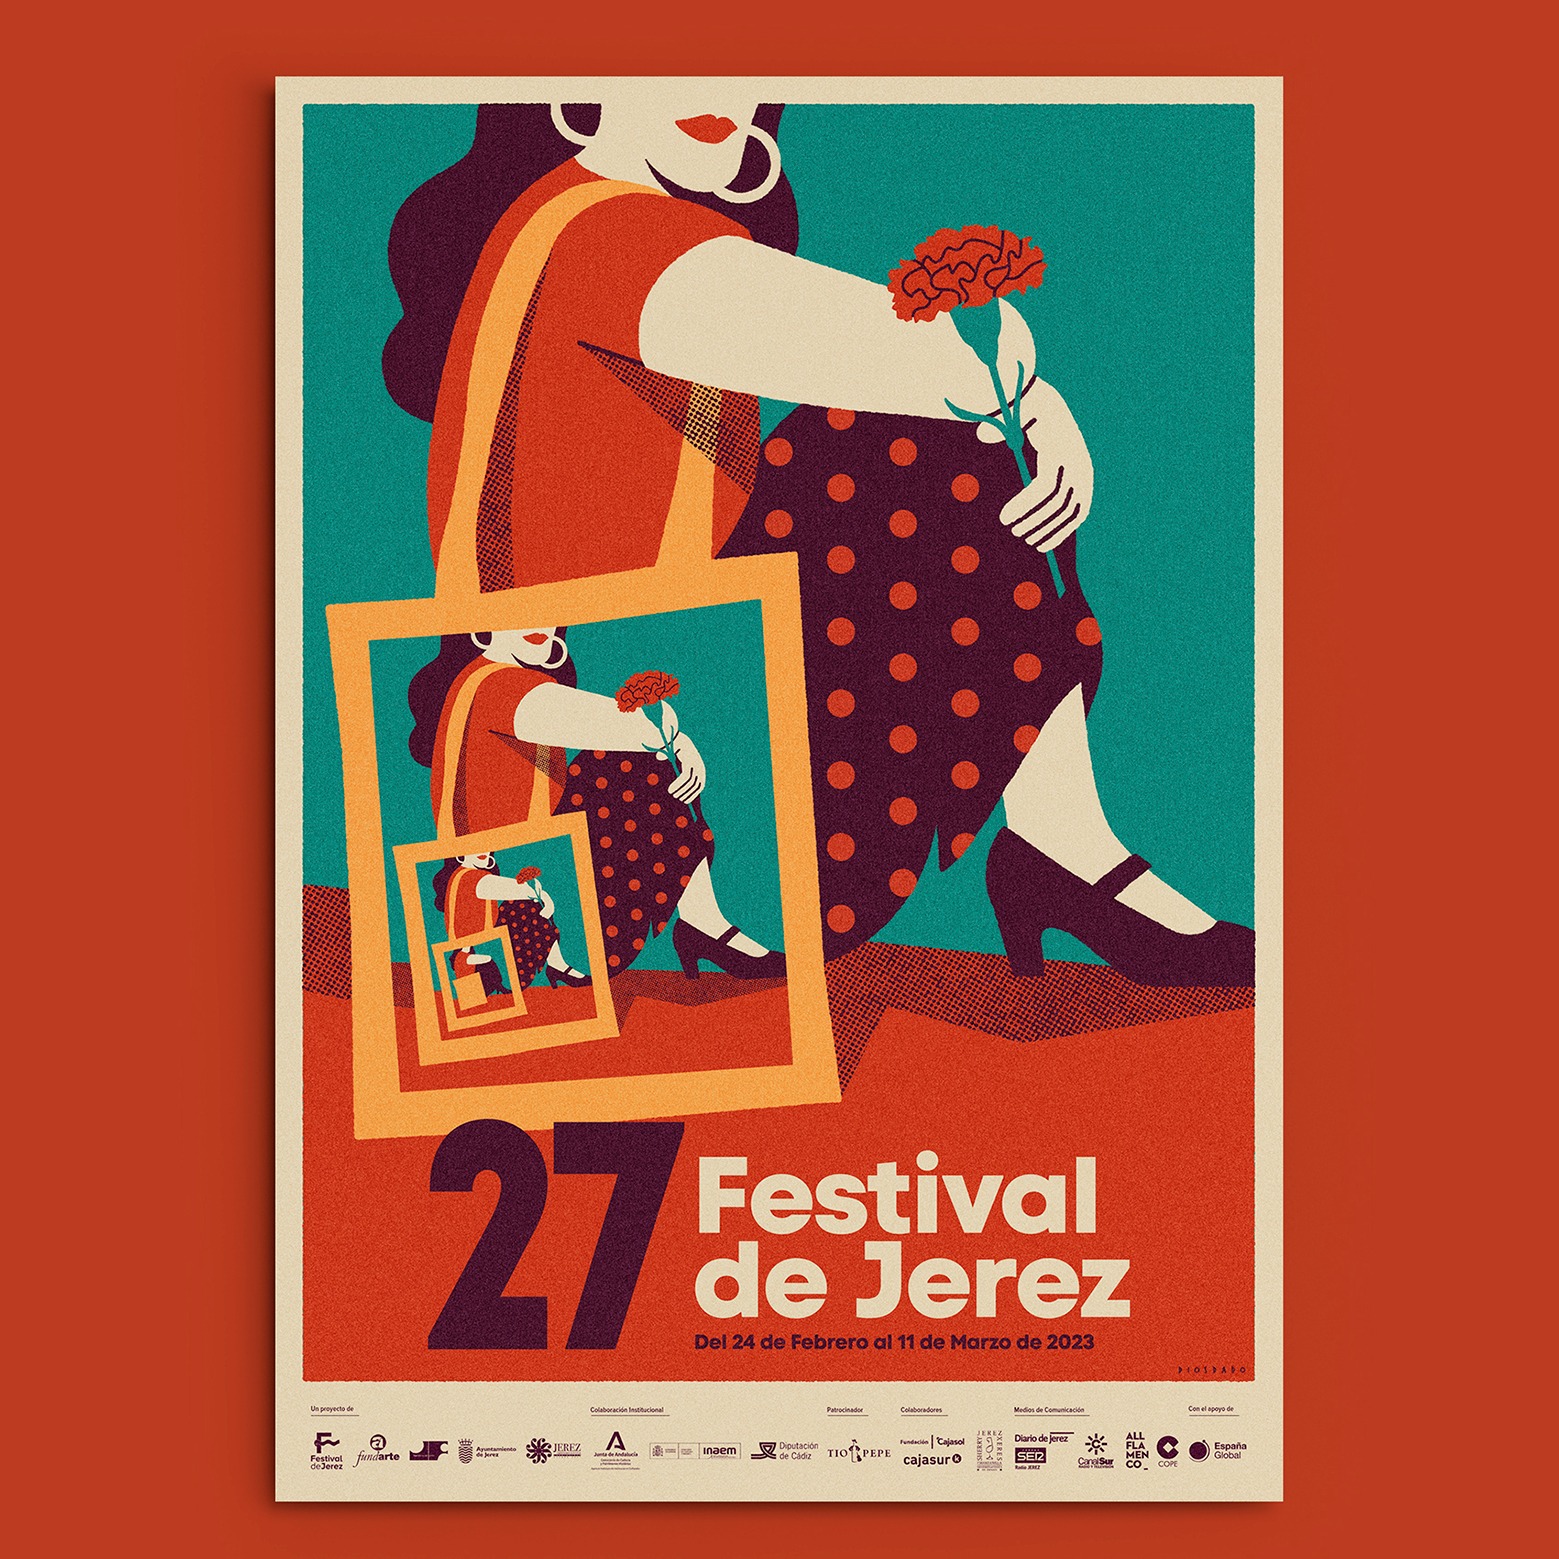 The annual flamenco festival in Jerez de la Frontera image